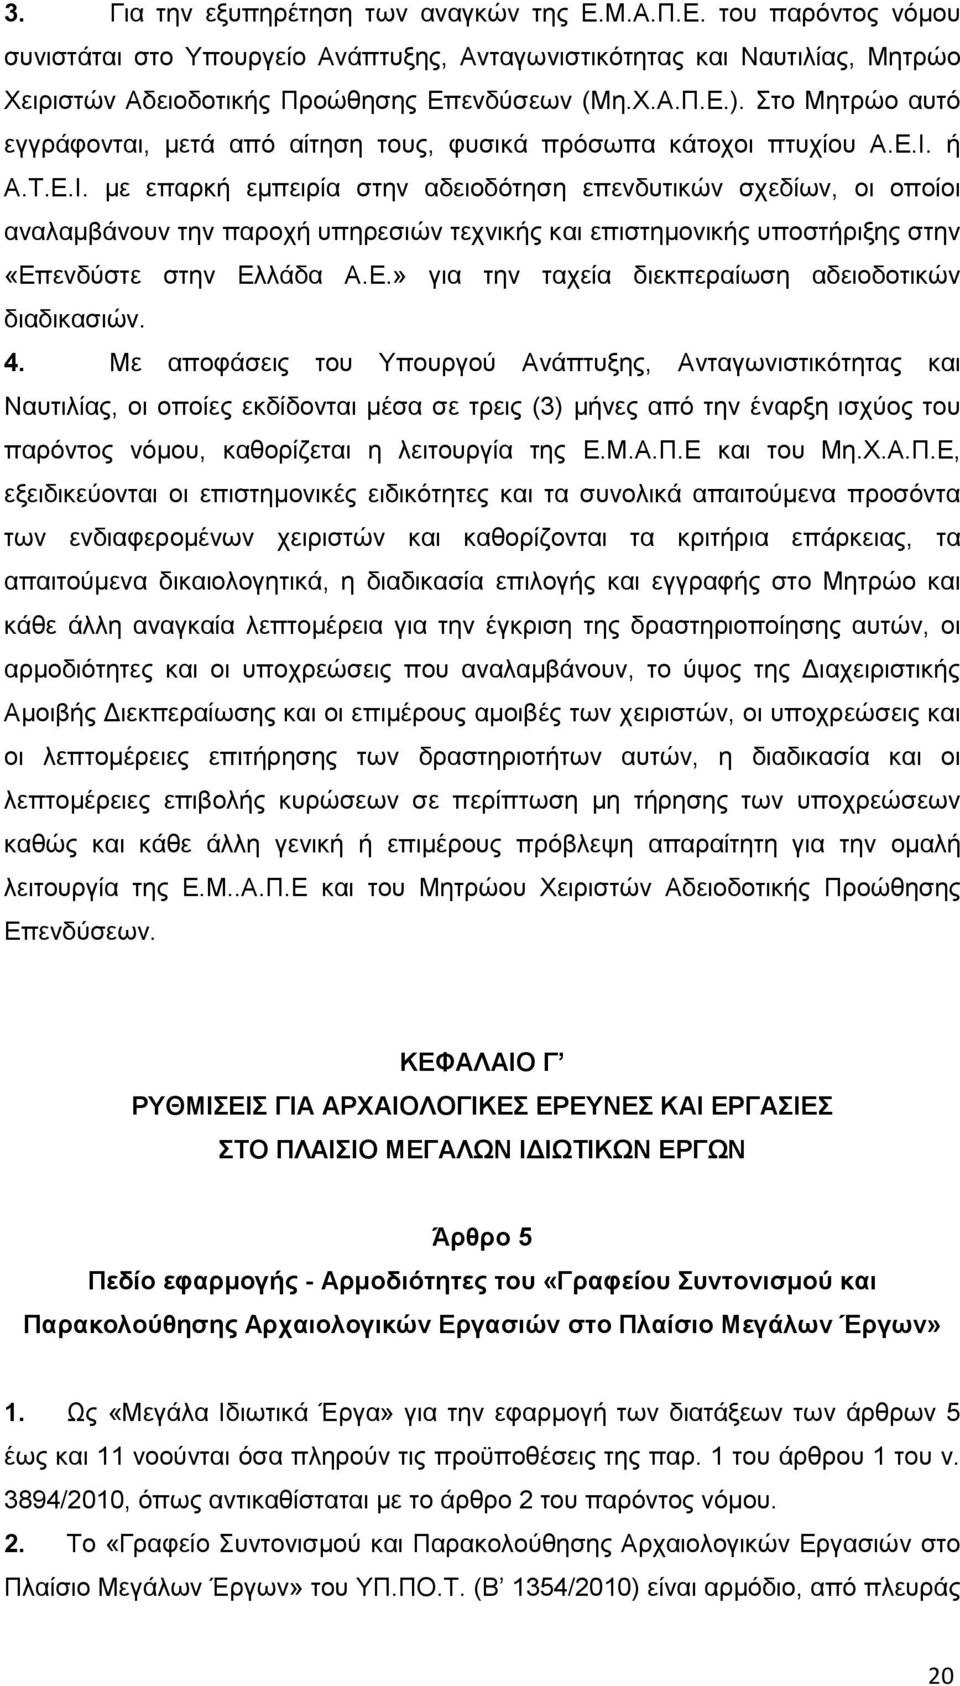 ή A.T.Ε.Ι. με επαρκή εμπειρία στην αδειοδότηση επενδυτικών σχεδίων, οι οποίοι αναλαμβάνουν την παροχή υπηρεσιών τεχνικής και επιστημονικής υποστήριξης στην «Επενδύστε στην Ελλάδα Α.Ε.» για την ταχεία διεκπεραίωση αδειοδοτικών διαδικασιών.